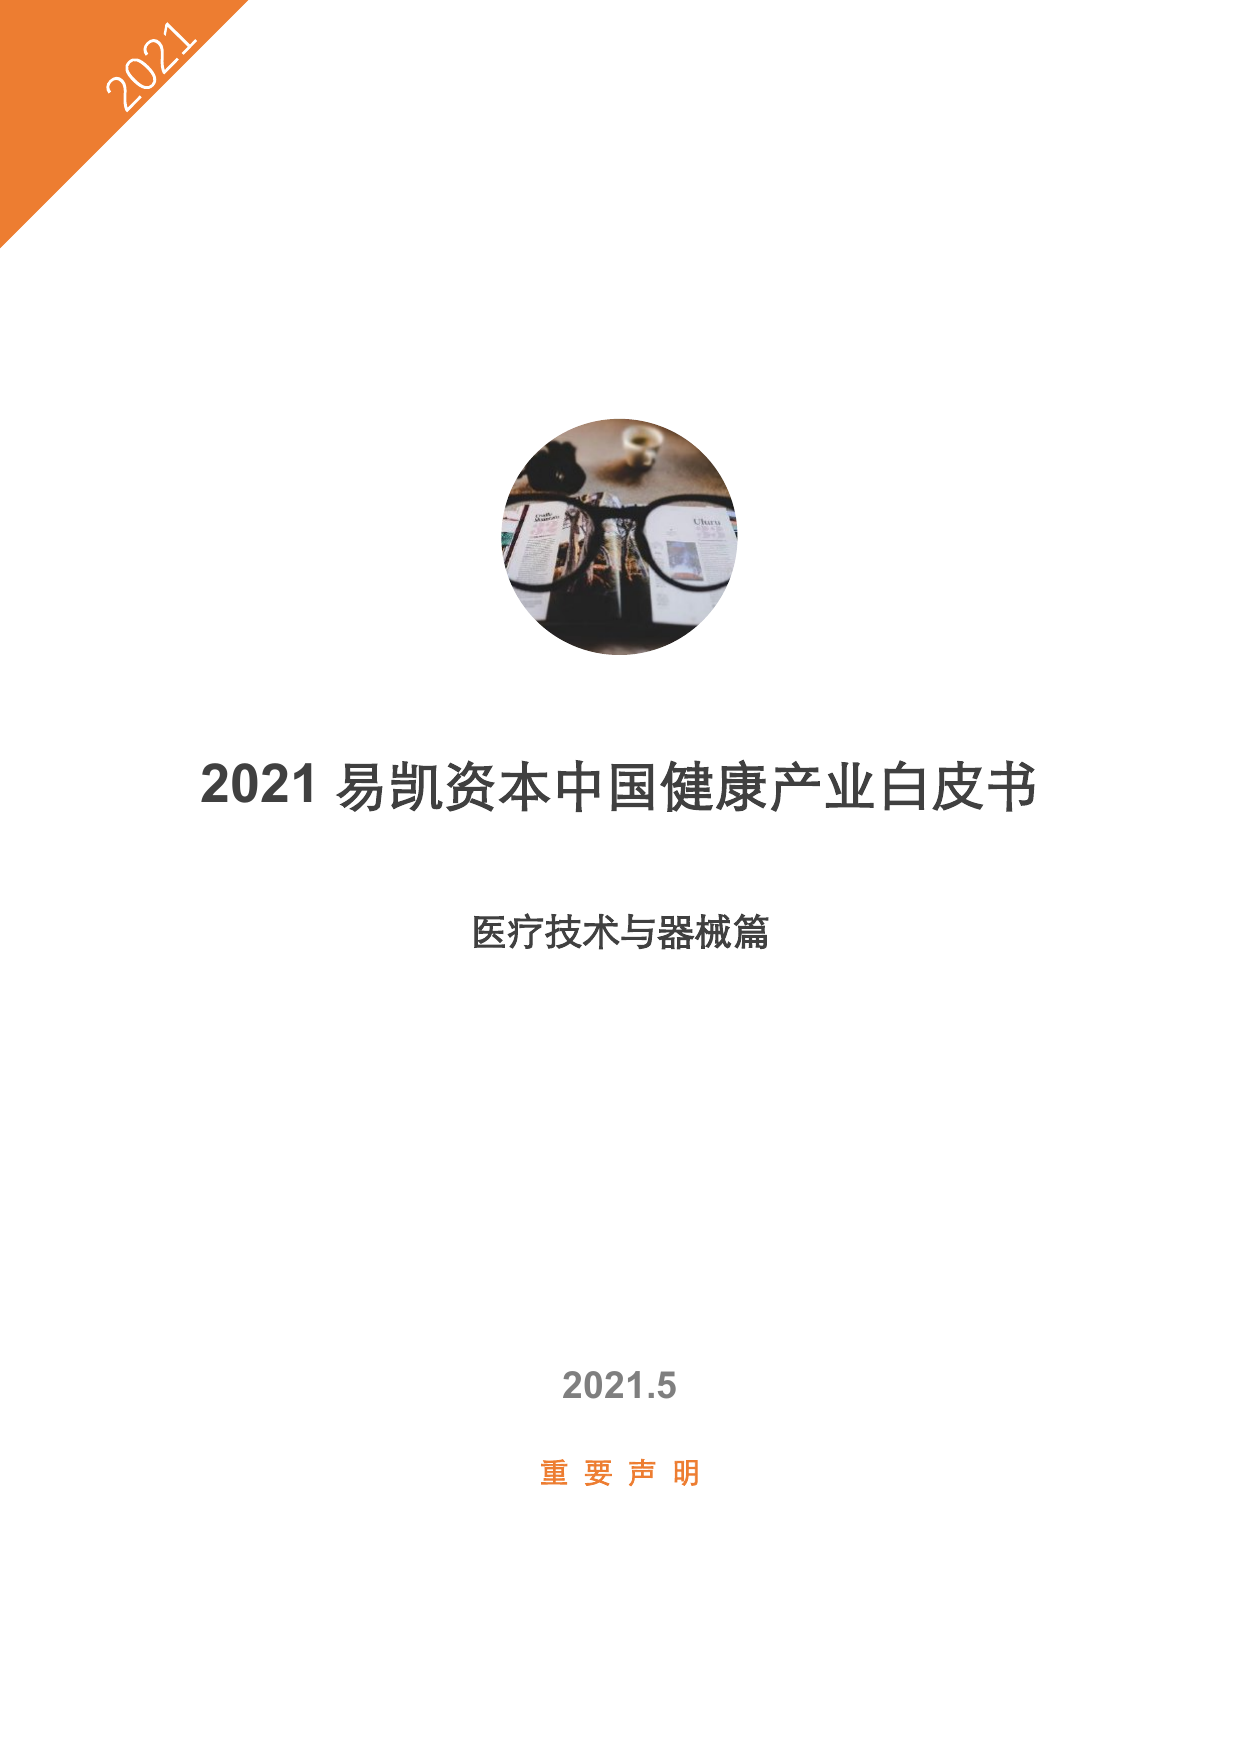 2021易凯资本中国健康产业白皮书—医疗技术与器械篇-易凯资本-2021.5-34页